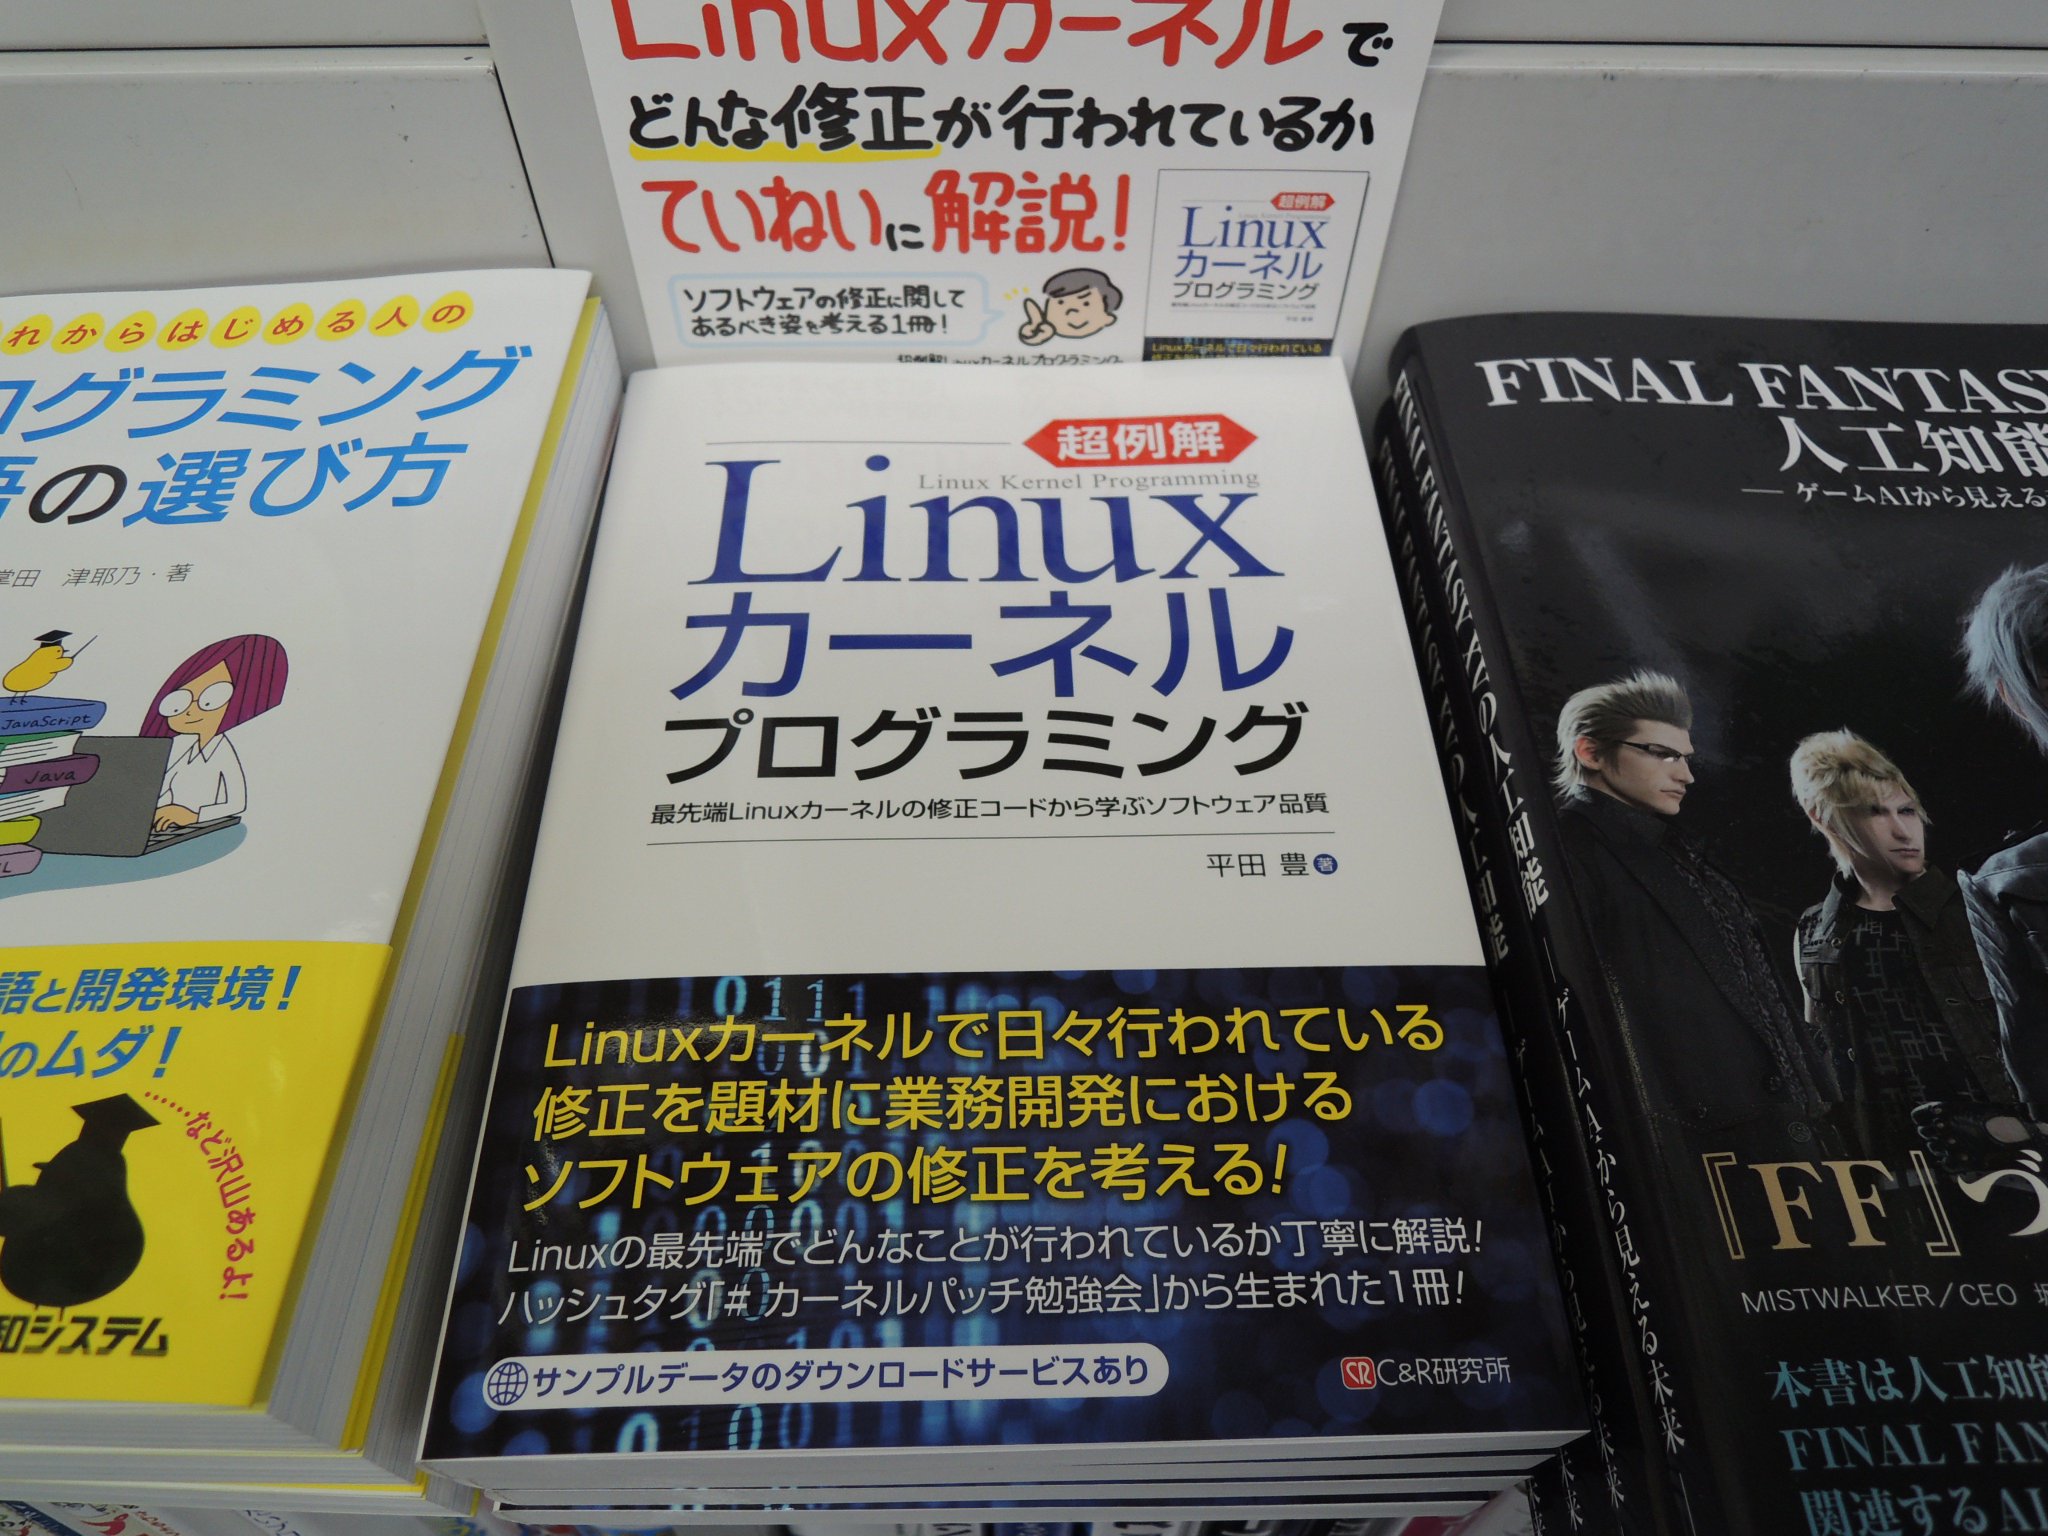 精文館書店 本店3ｆ V Twitter 平田豊 超例解linuxカーネルプログラミング C R研究所 入荷しました Linux の最先端でどんな修正が行われているのか Linuxカーネルでの日々の修正内容を題材に ソフトウェアの品質確保の仕方や バグを作り込みやすいポイント